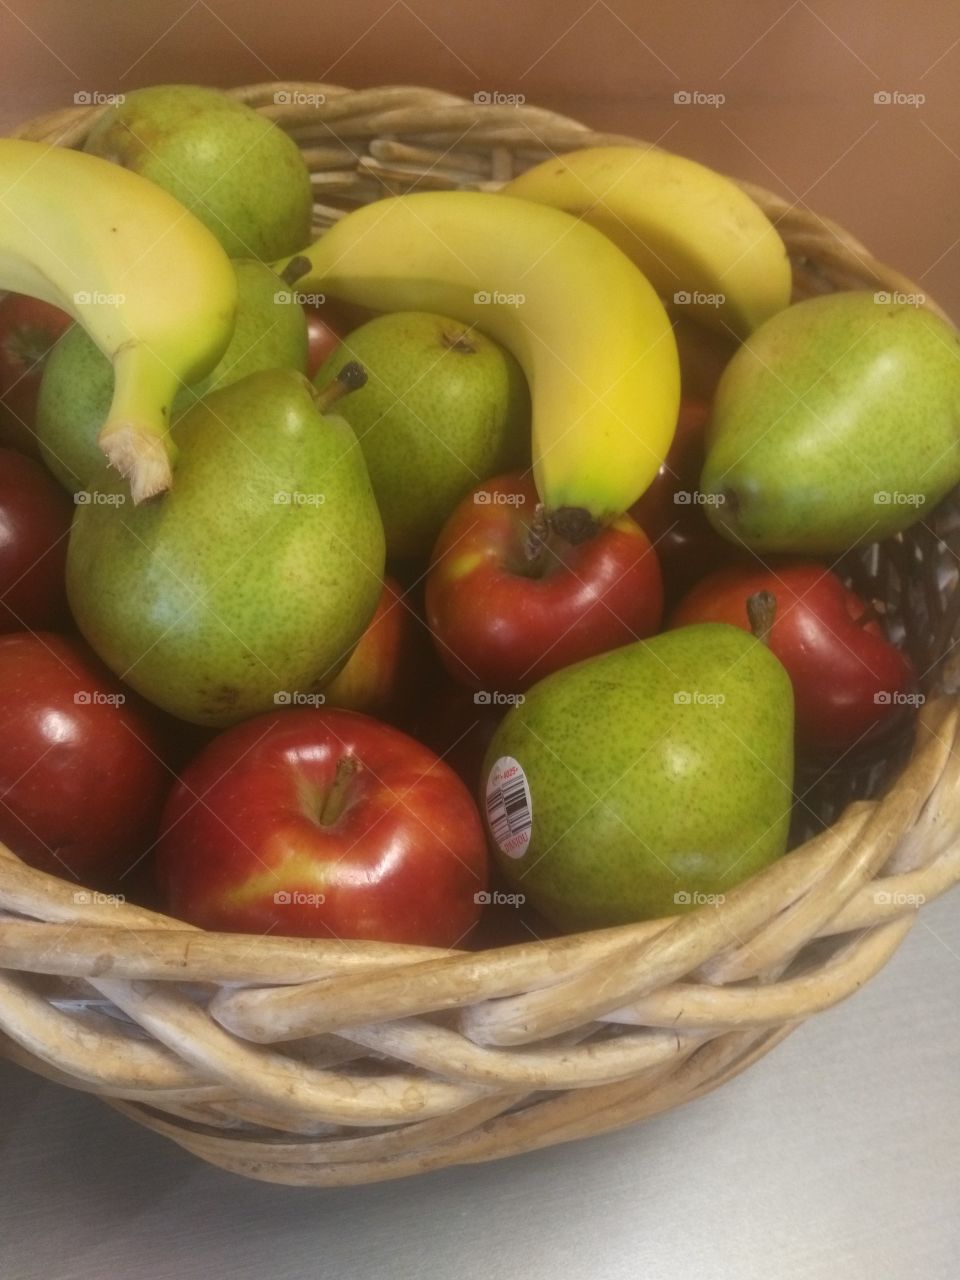 fruit anyone